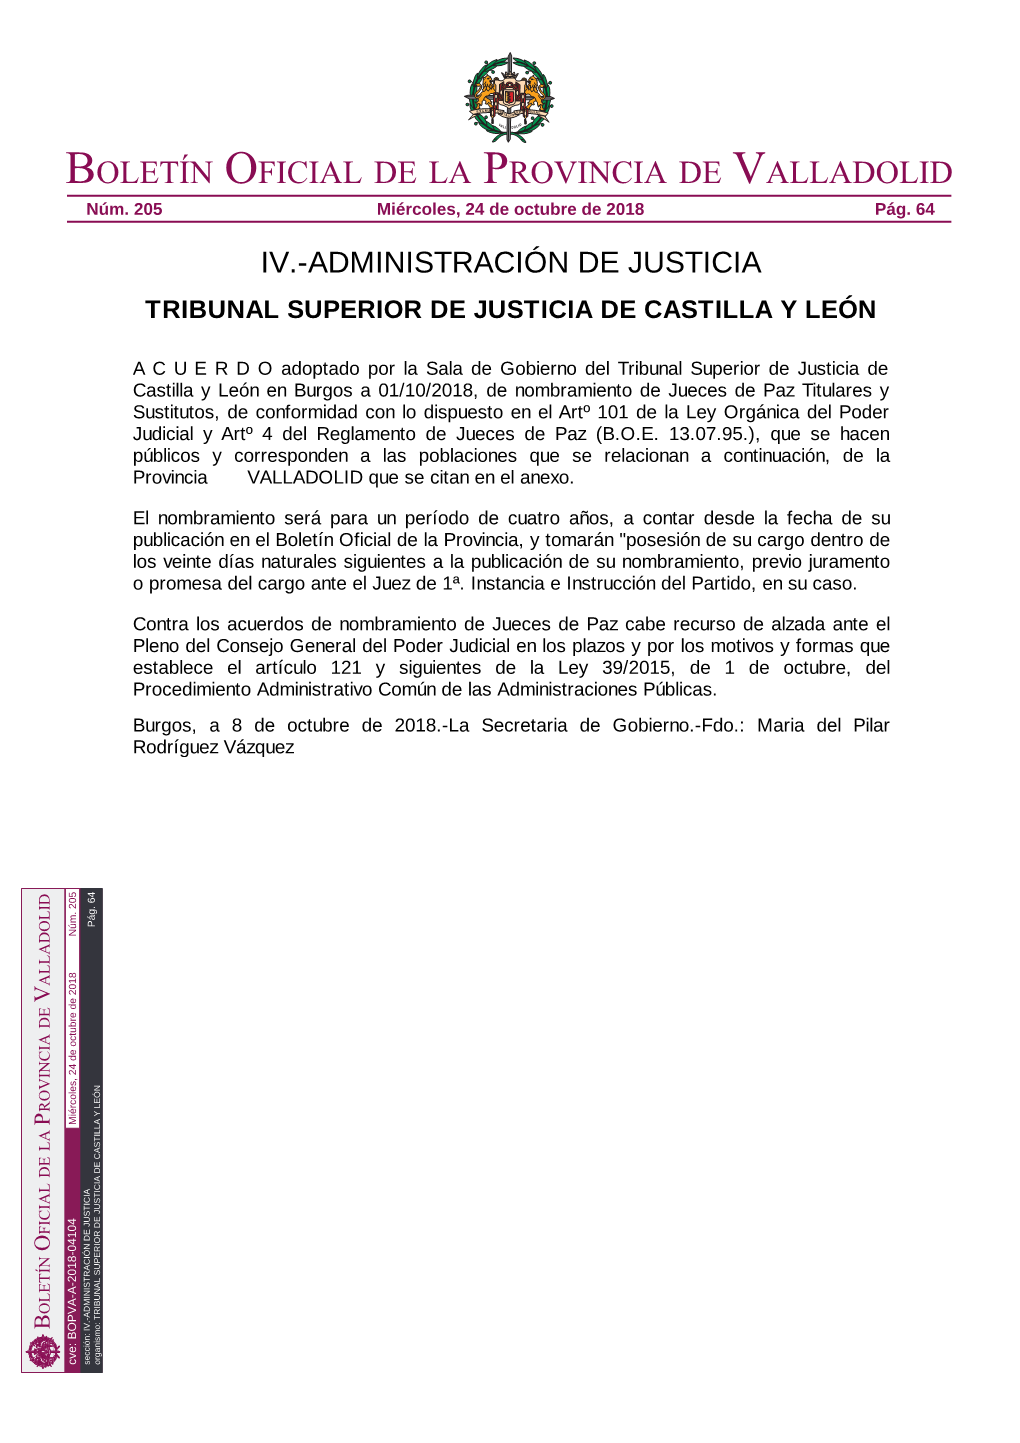 Tribunal Superior De Justicia De Castilla Y León